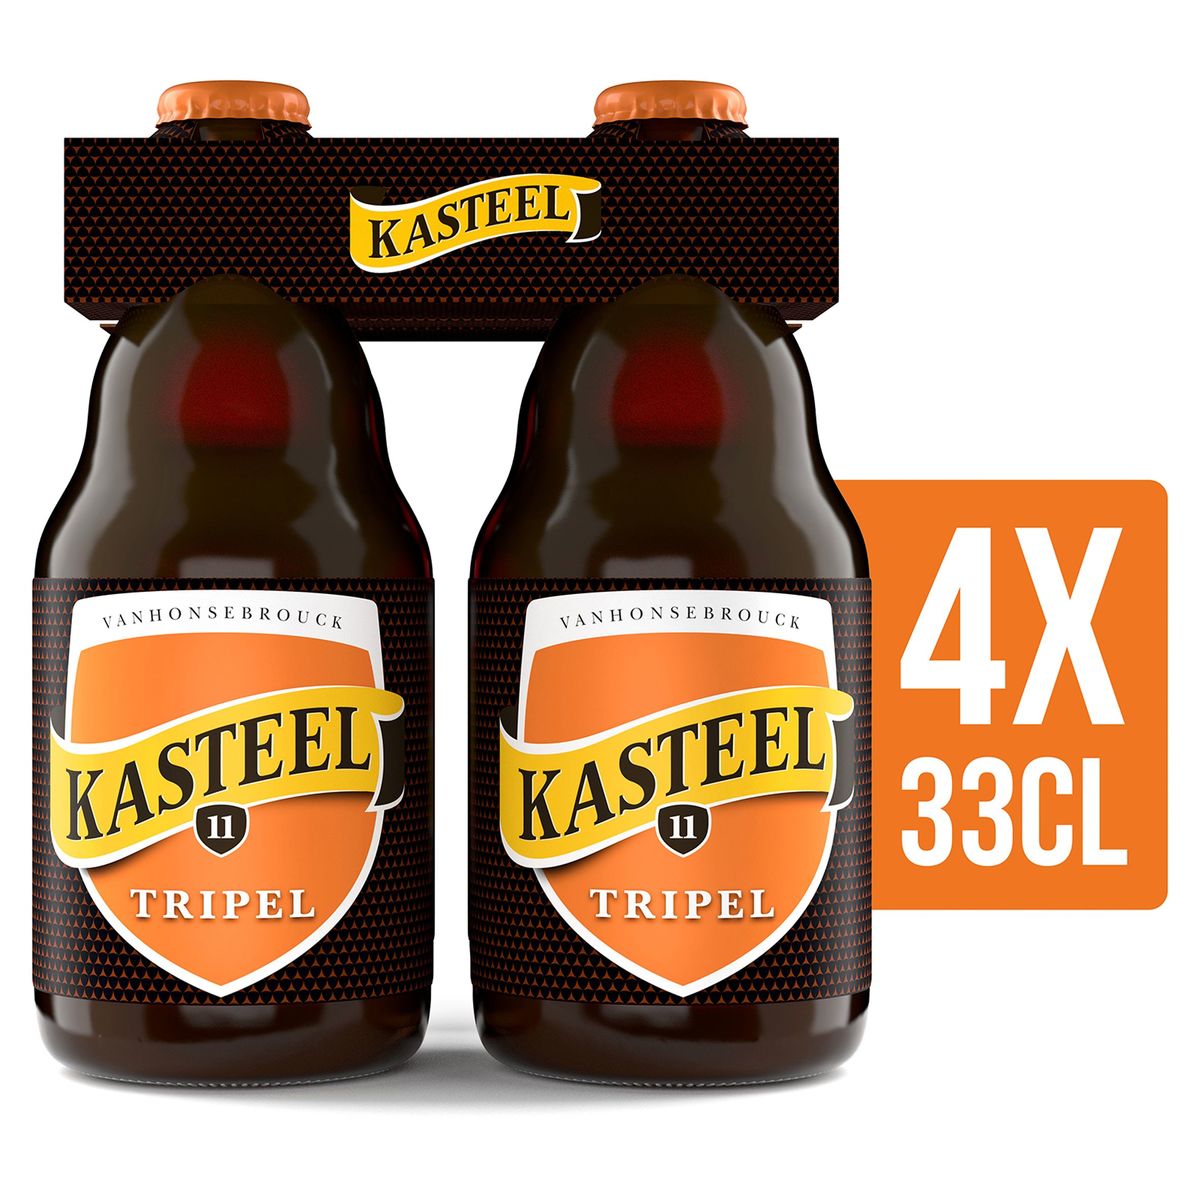 Kasteel Tripel Bouteilles 4 x 33 cl